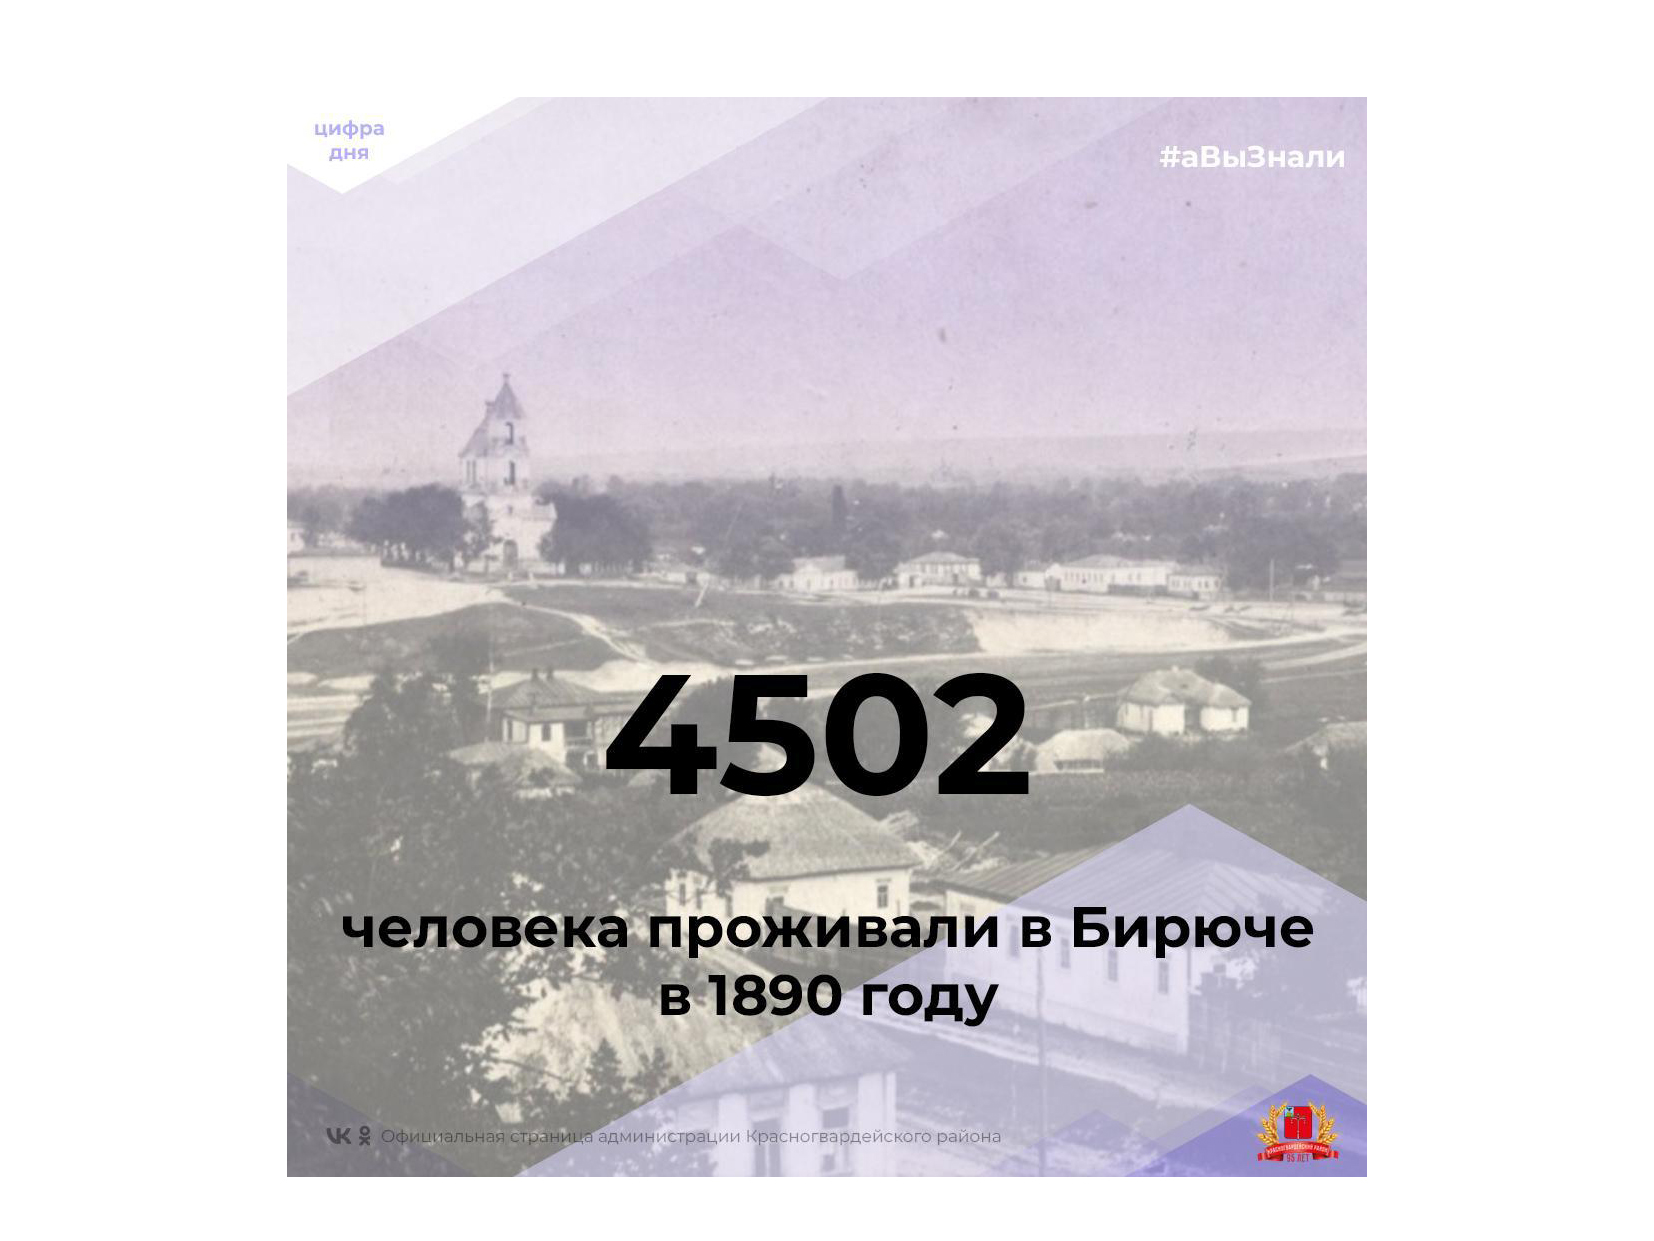 #аВыЗнали, что в 1890 году в Бирюче проживало 4502 человека?.